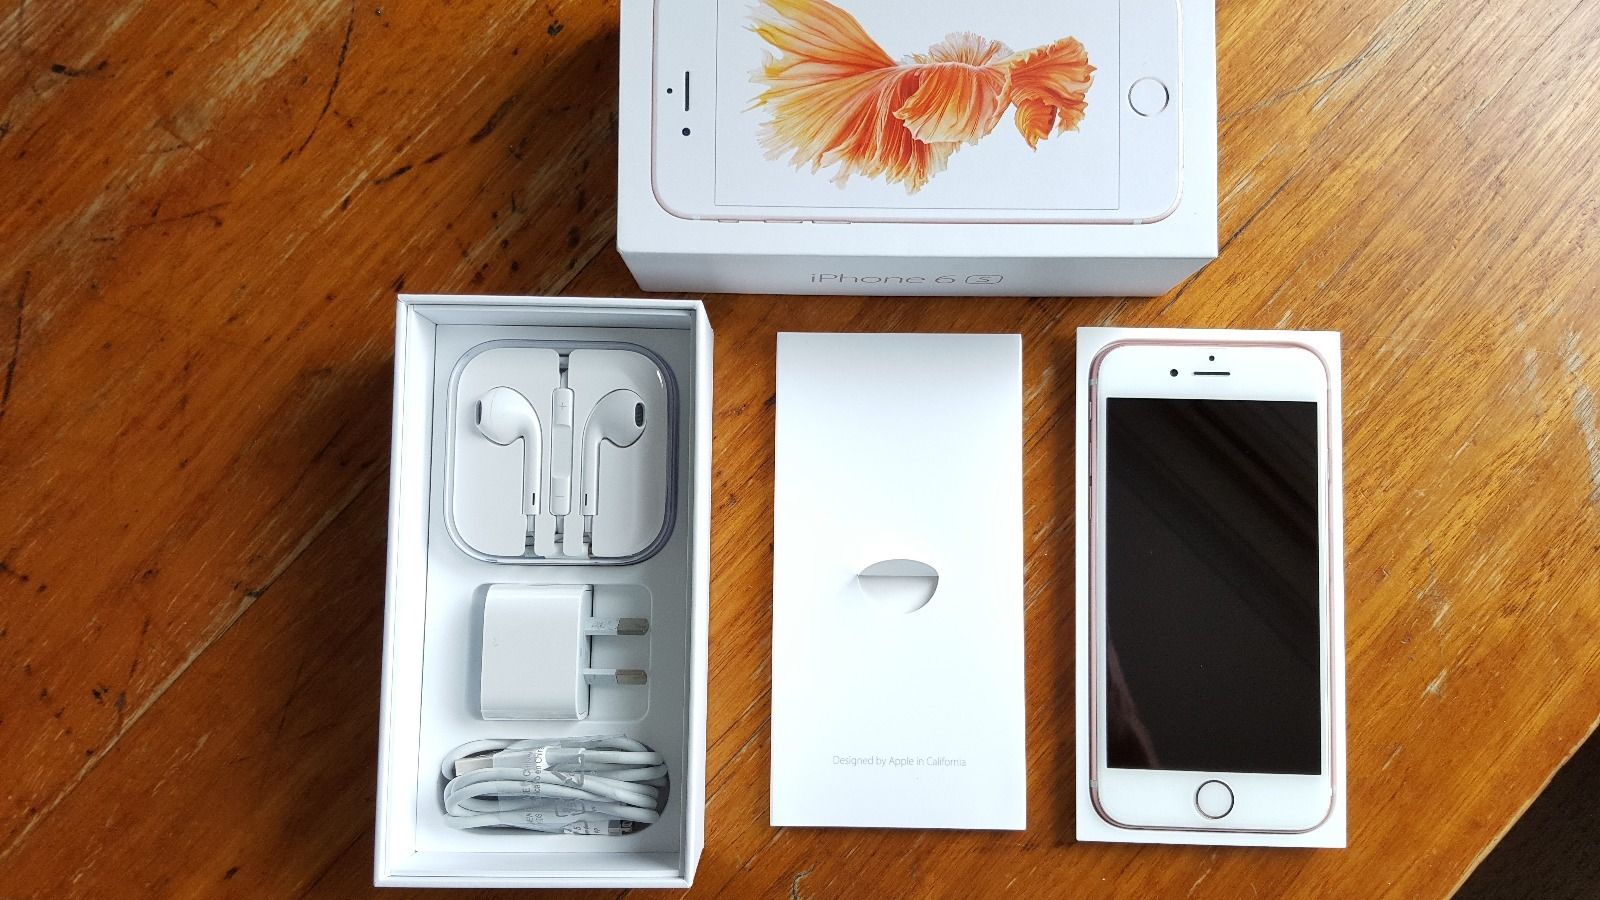 Apple iPhone 6S Plus  & iPhone 6S buy 2 get 1 free - Мобильные телефоны,аксессуары